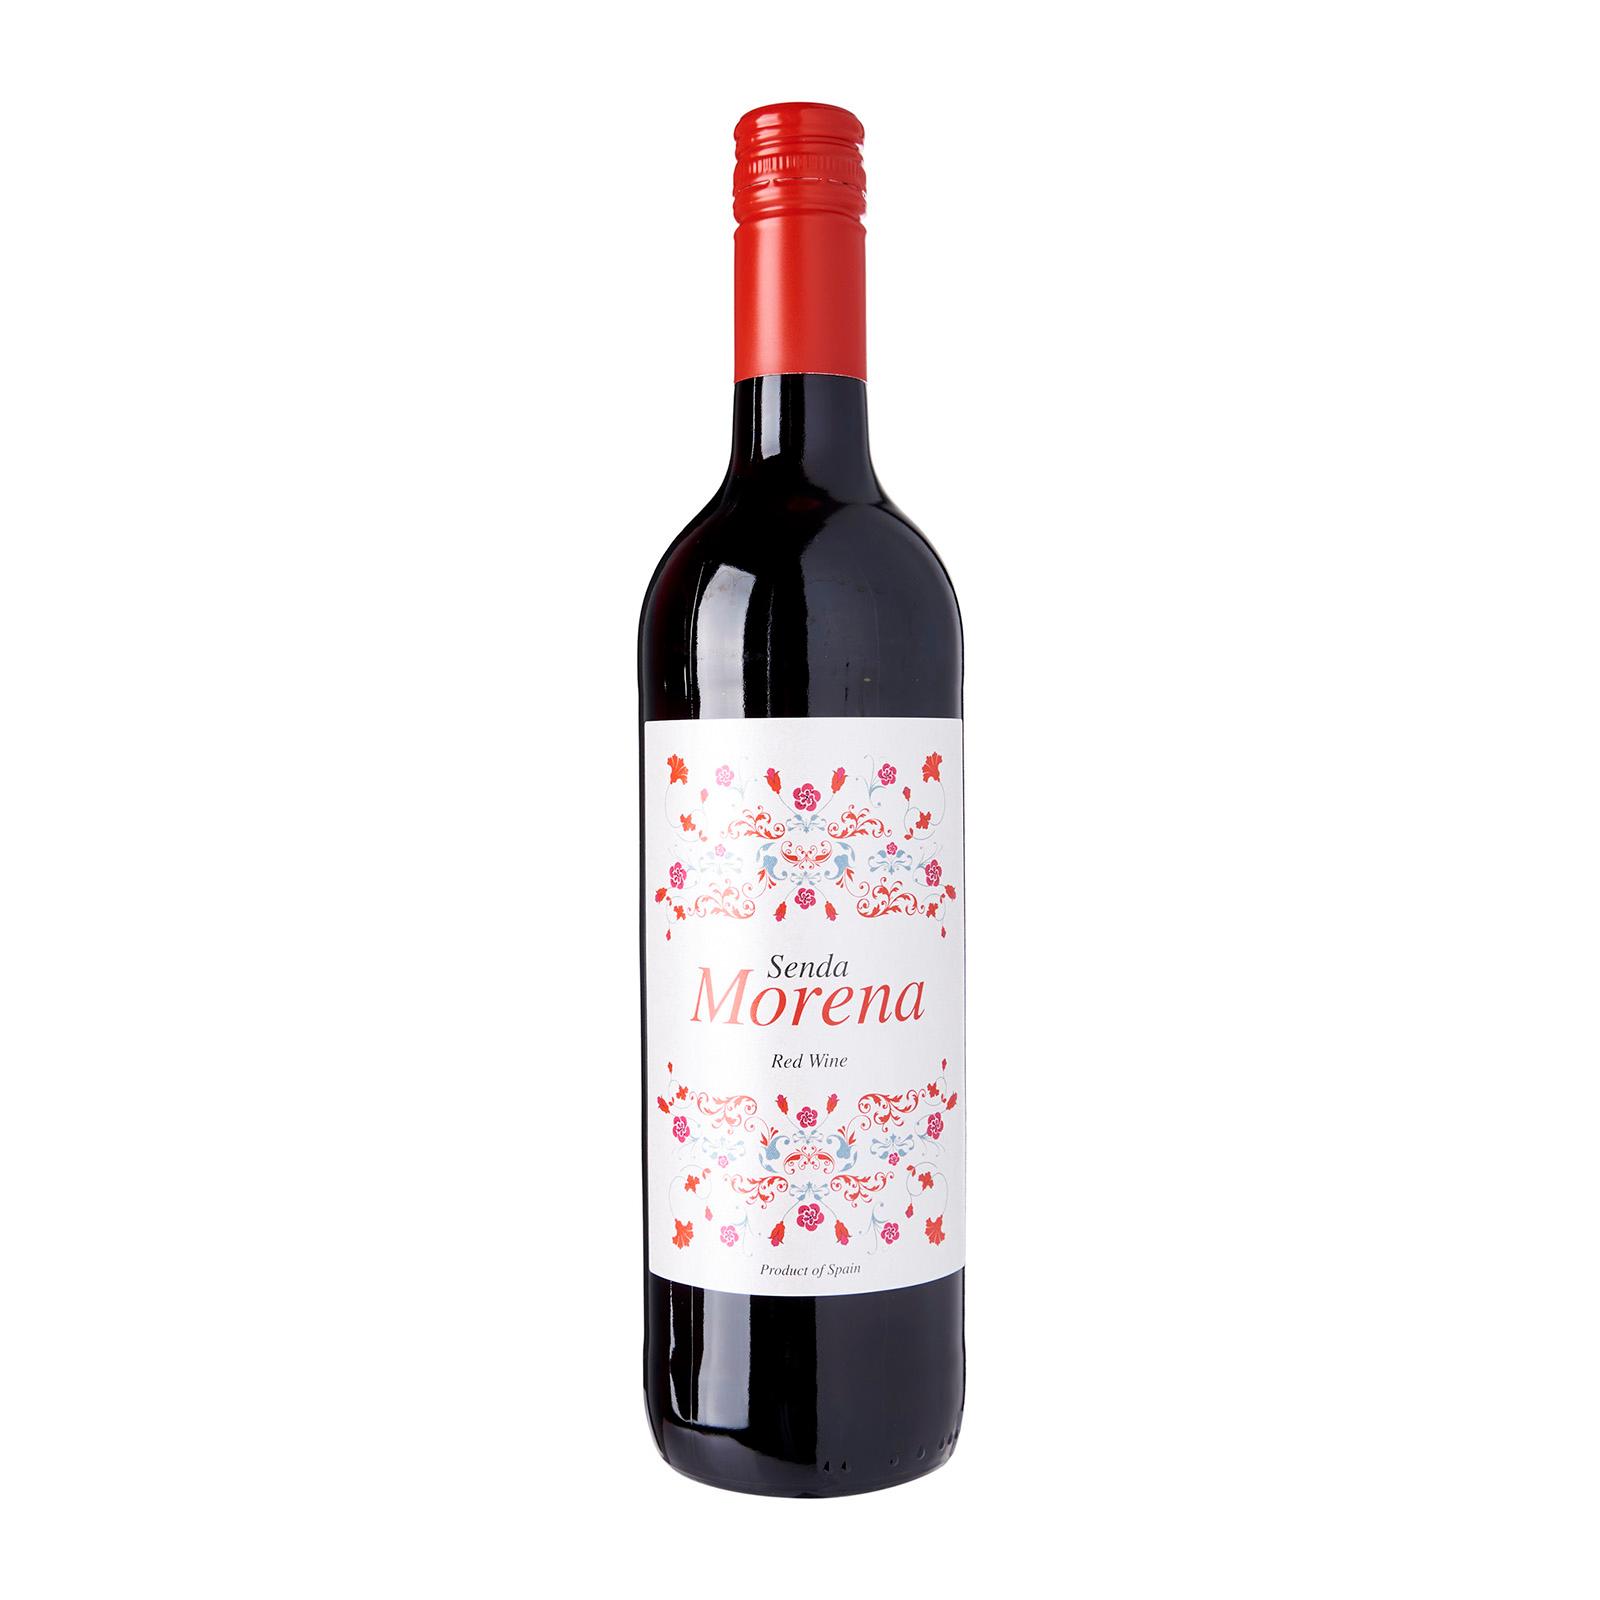 Senda Morena Red Wine Spain